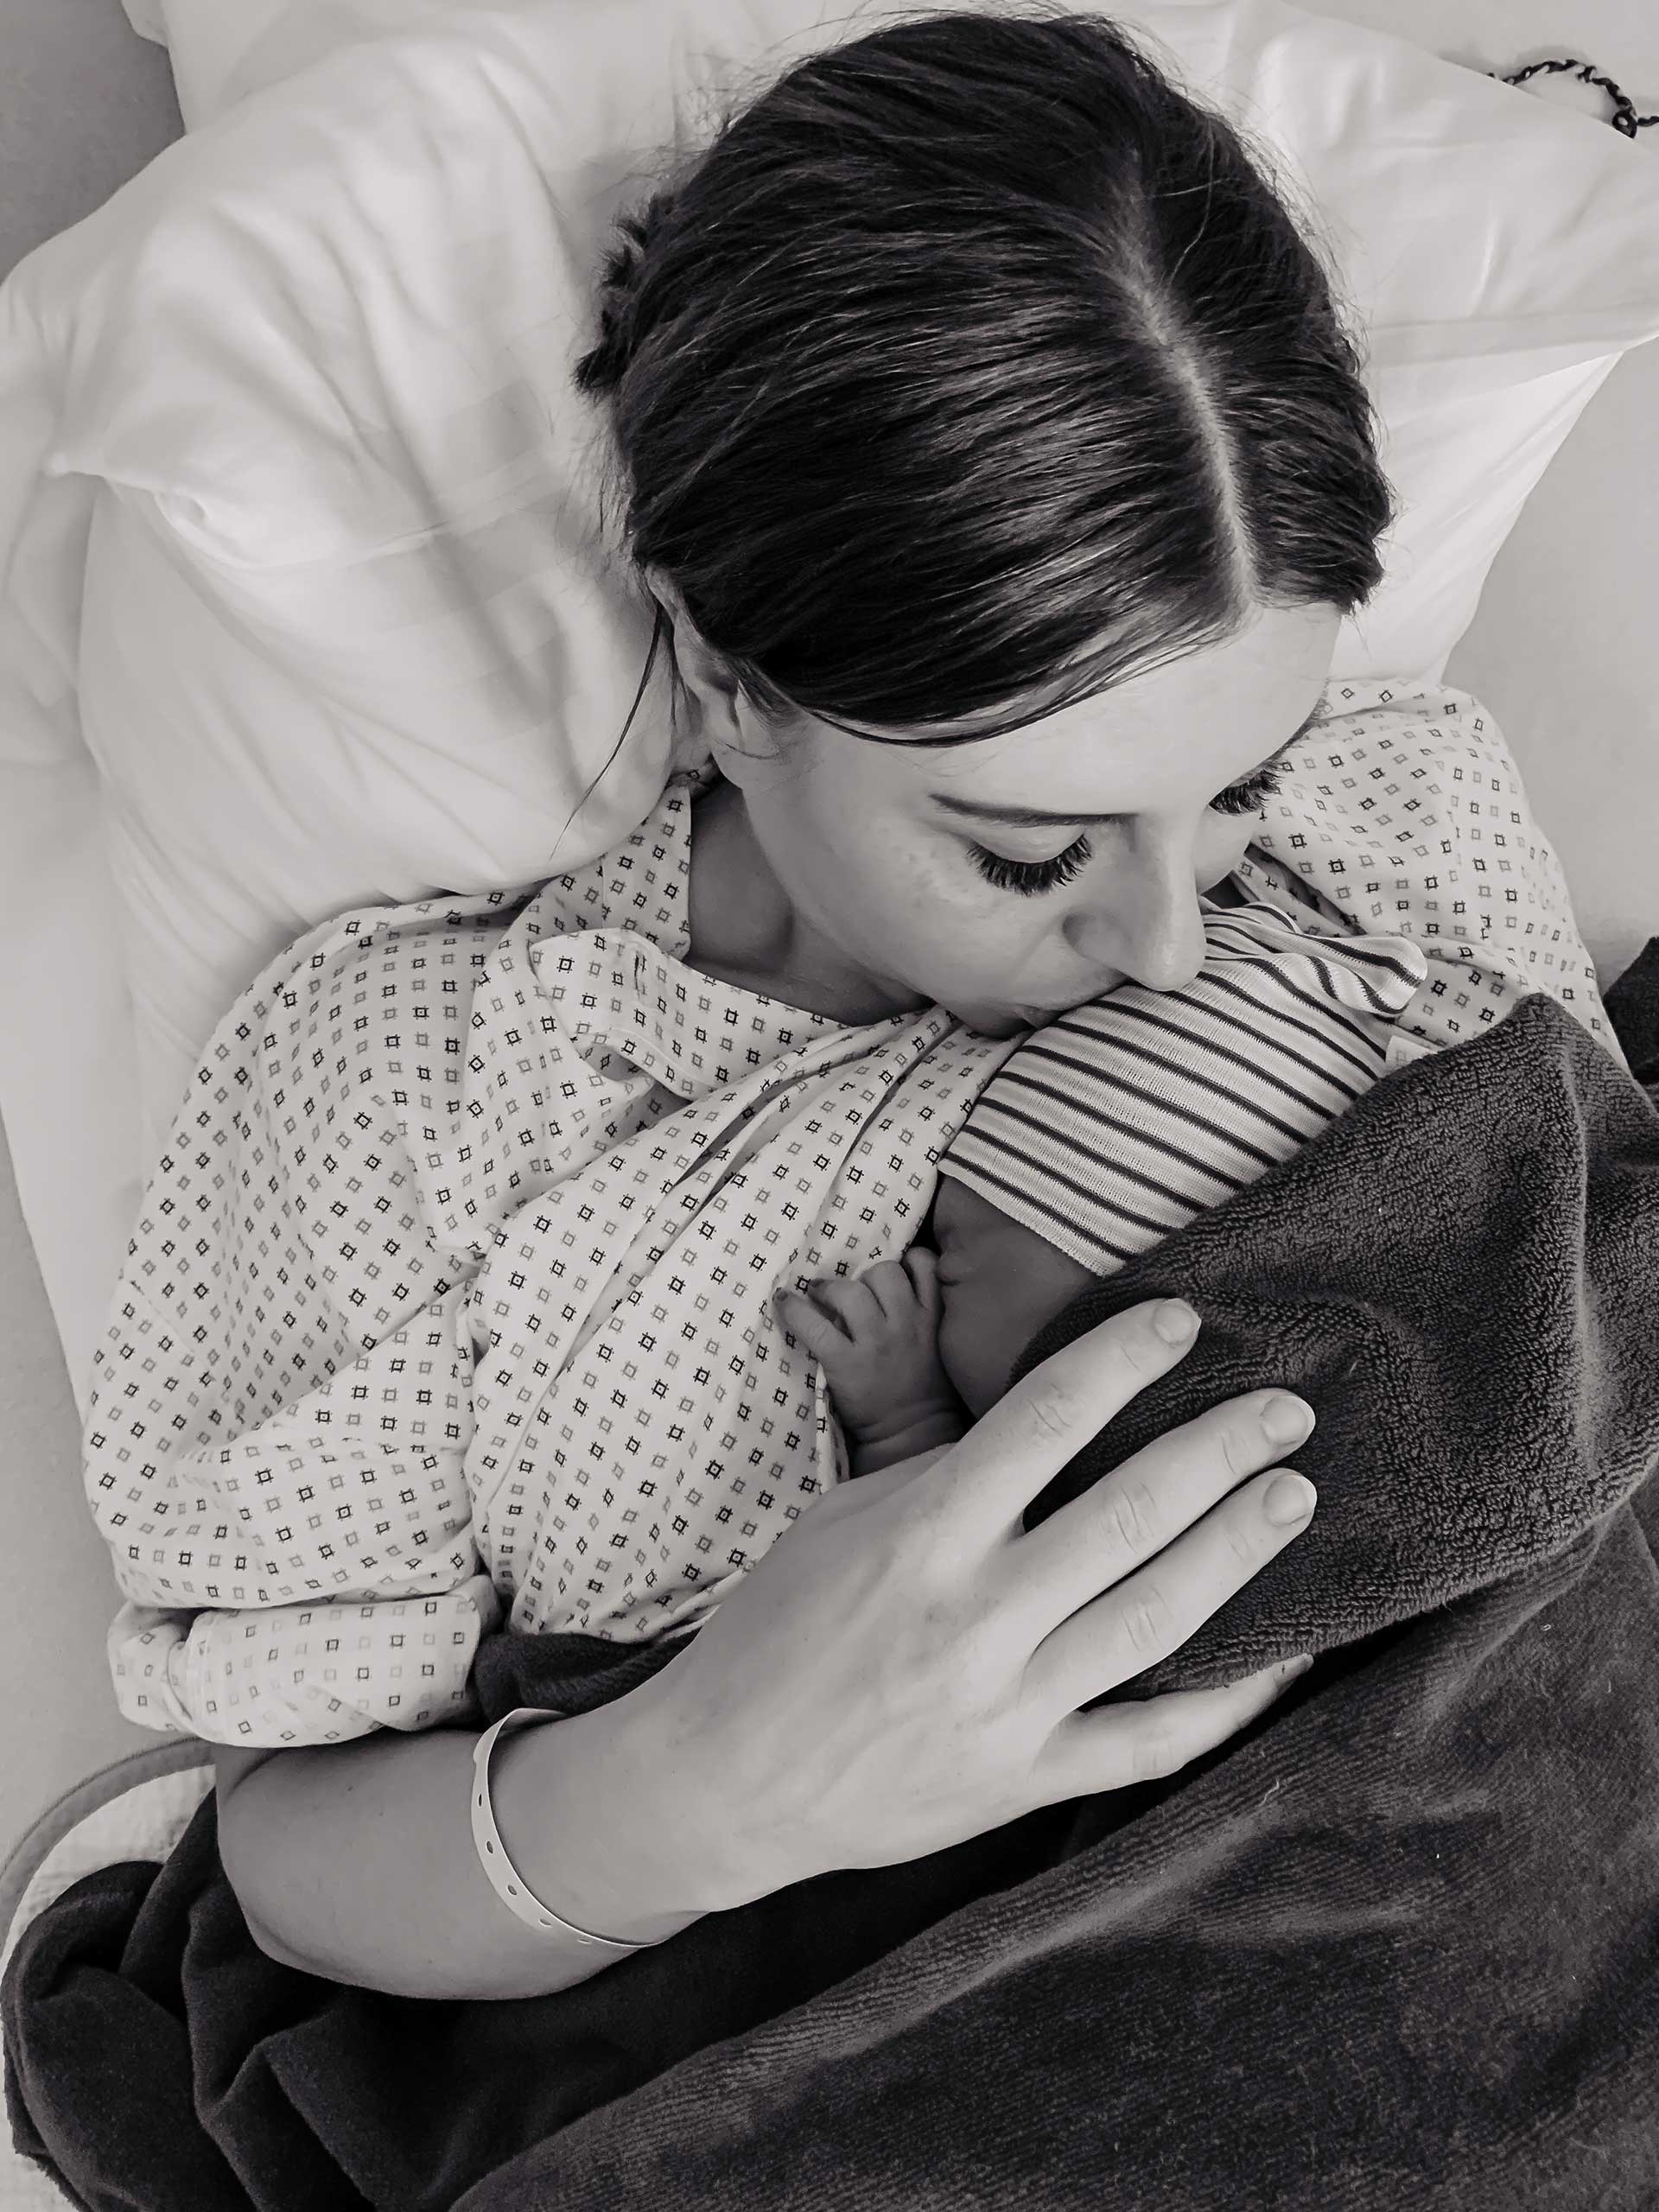 Heute liest du am Mamablog einen schönen Geburtsbericht, und zwar meinen Geburtsbericht! Schön deshalb, weil es für mich eine Traumgeburt war – es gibt nichts, was ich hätte anders machen wollen und es war alles gut so wie es gekommen ist. www.whoismocca.com